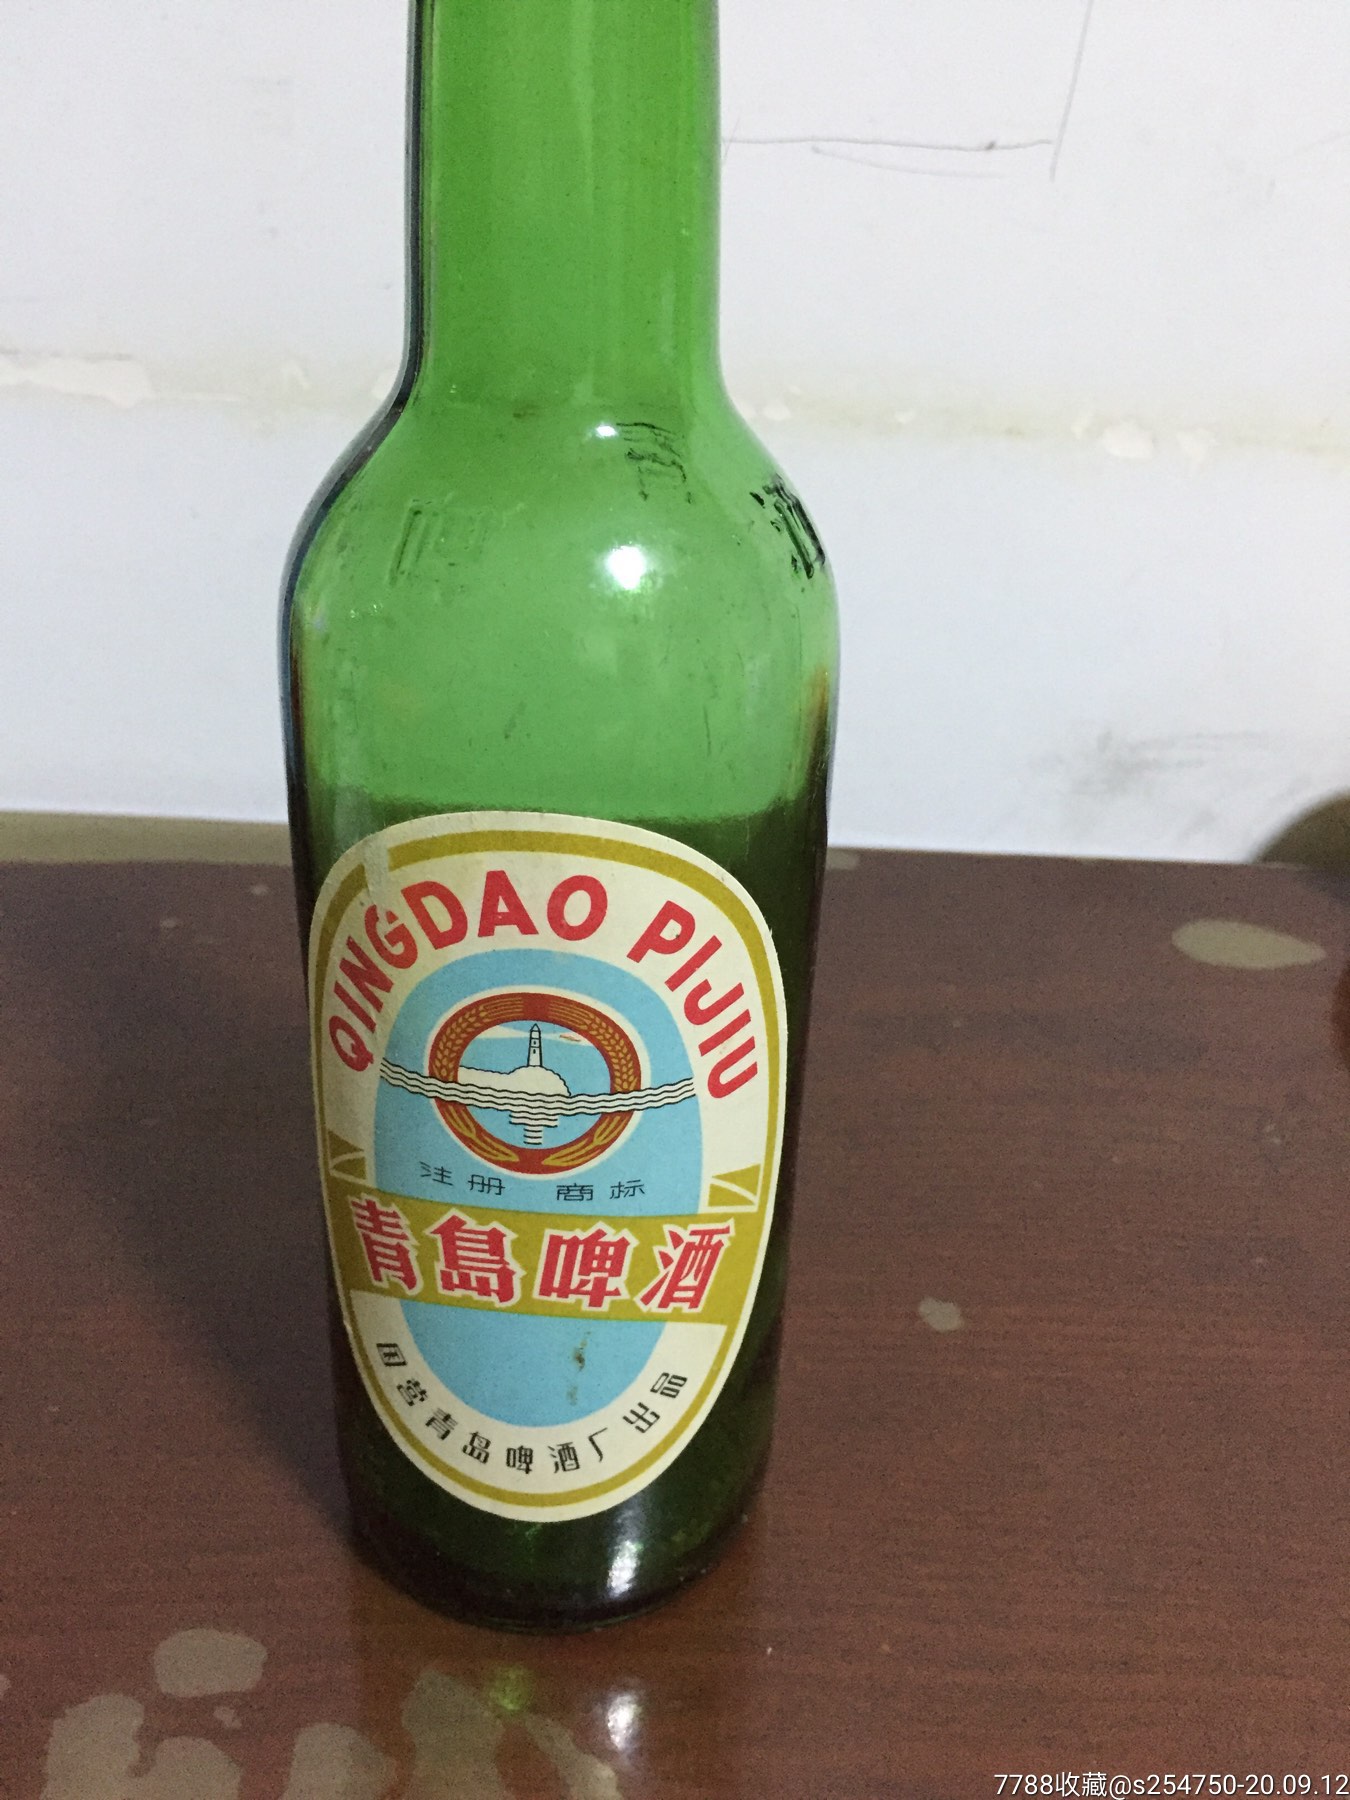 60年代,国营青岛啤酒厂出品的青岛啤酒瓶